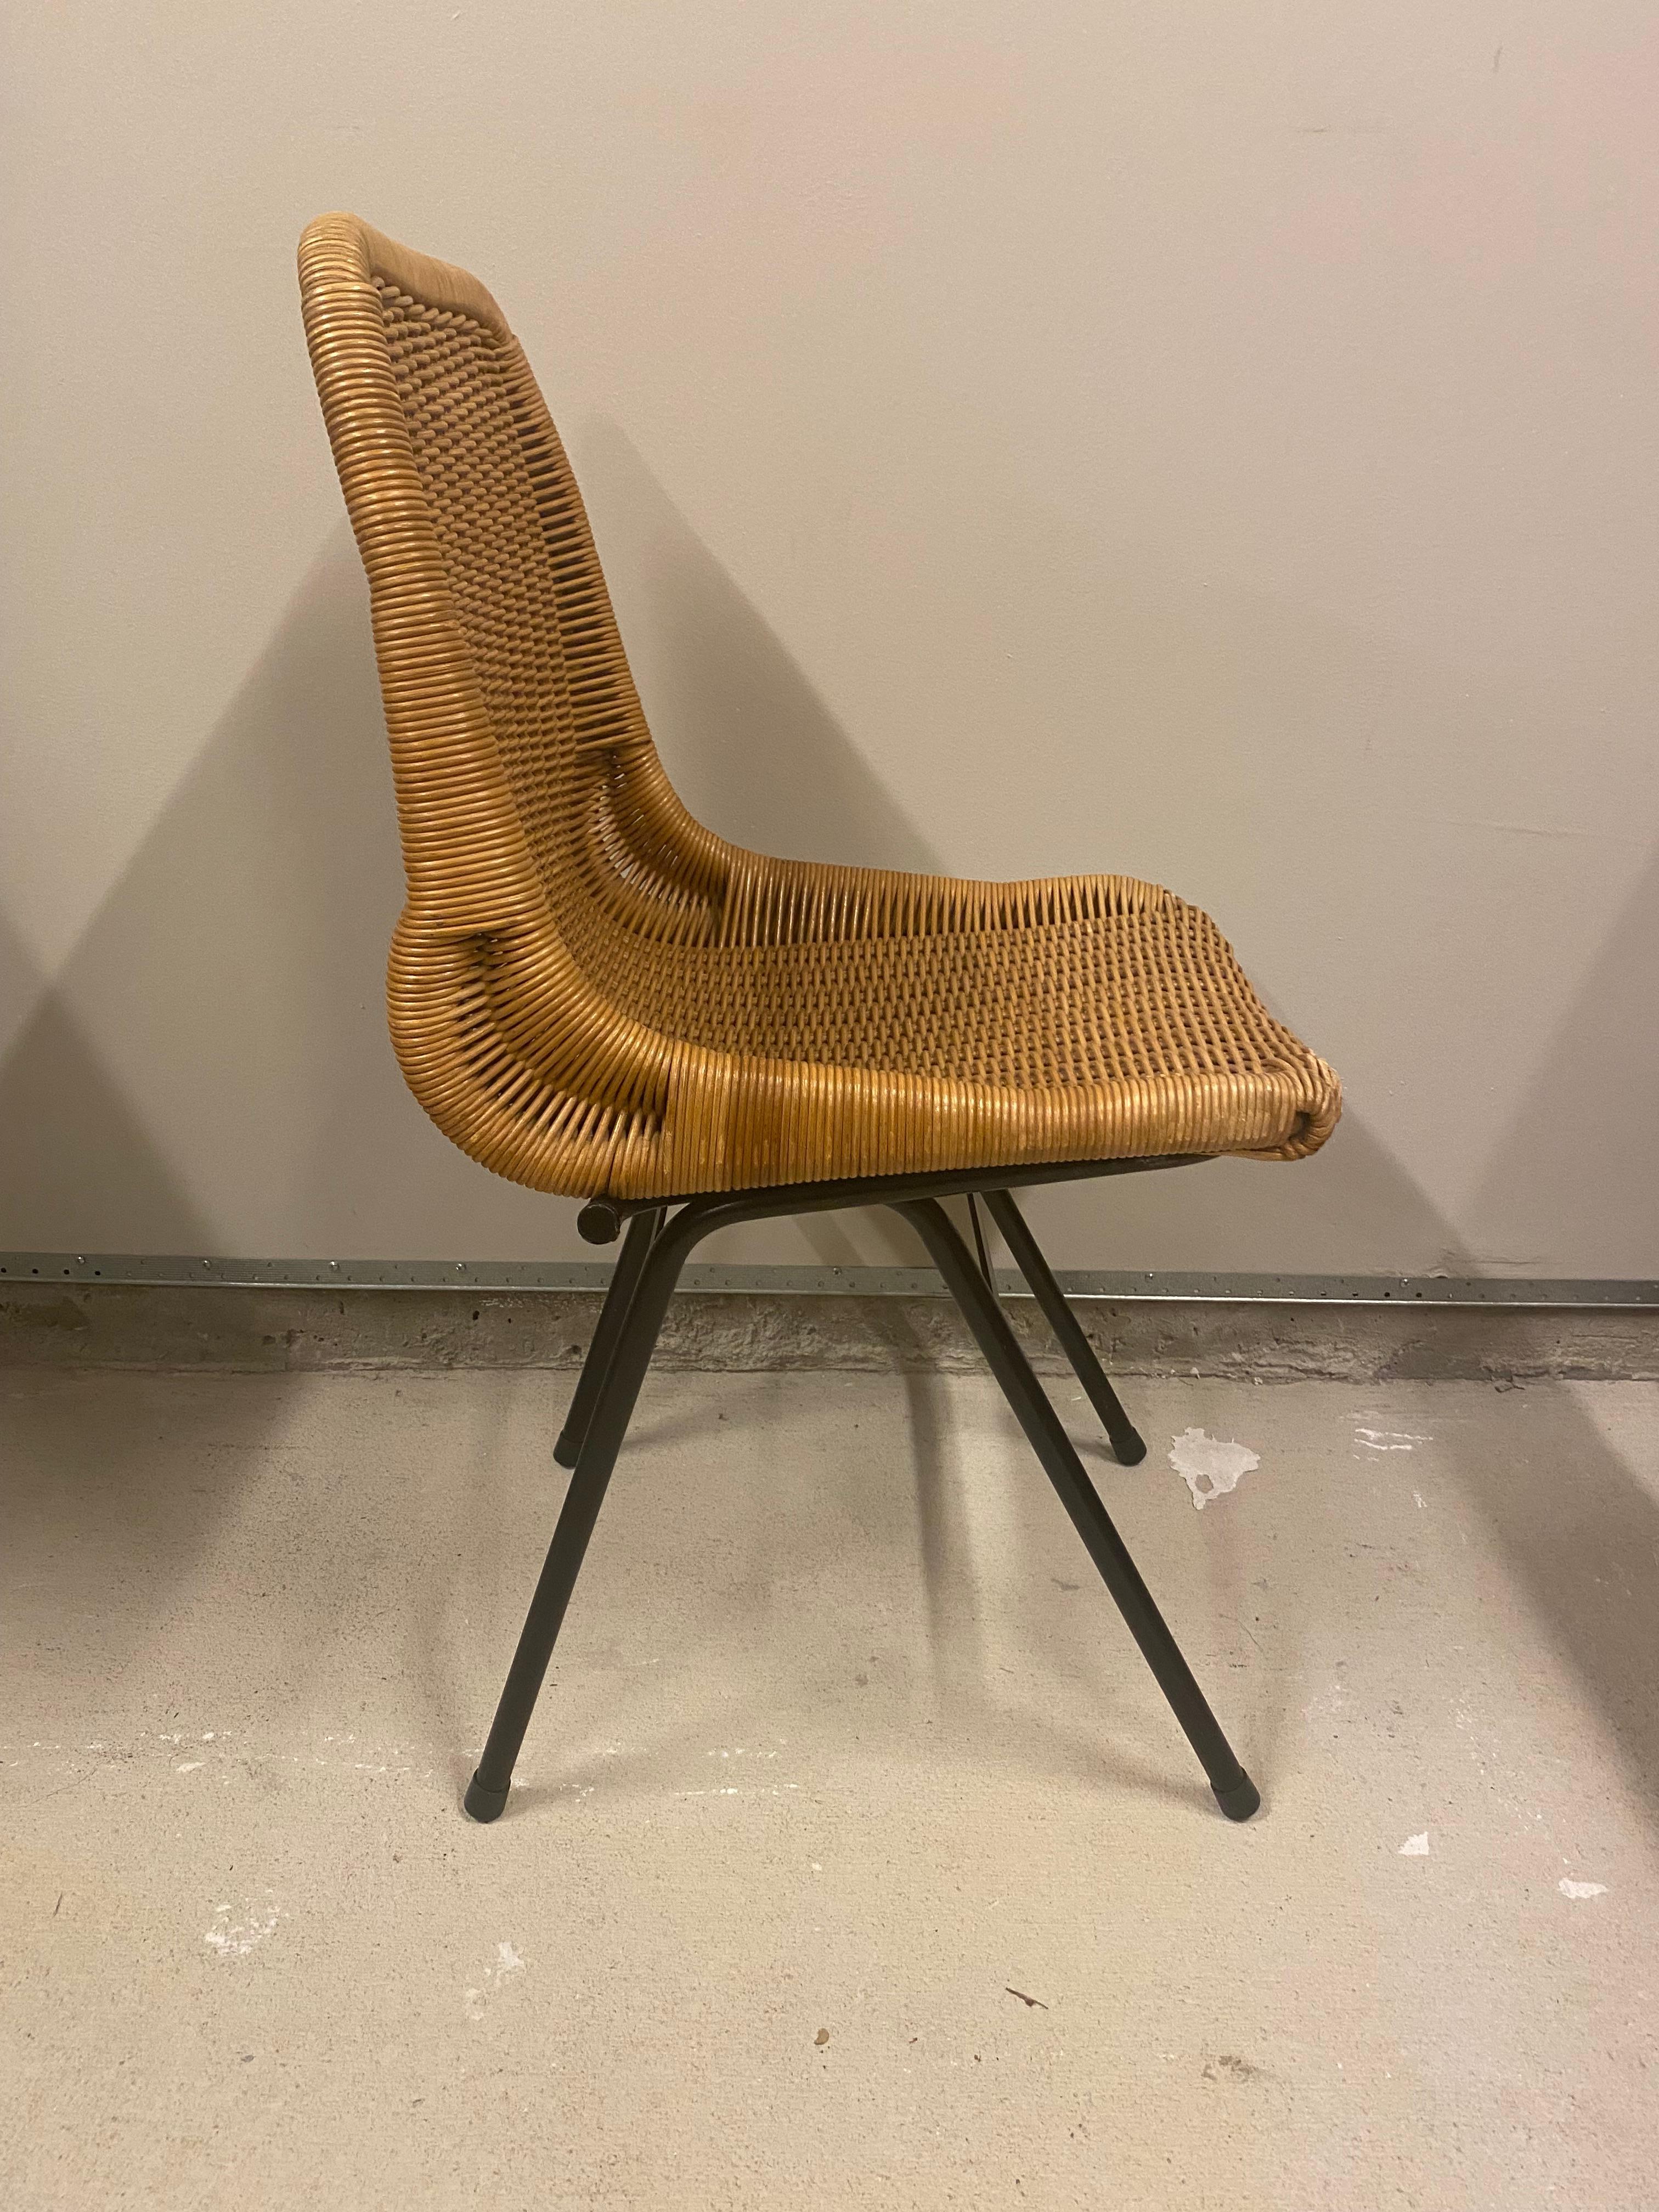 Mid-20th Century Set of 4 Rattan or Wicker Chairs, Dirk van Sliedregt, NL, 1960's